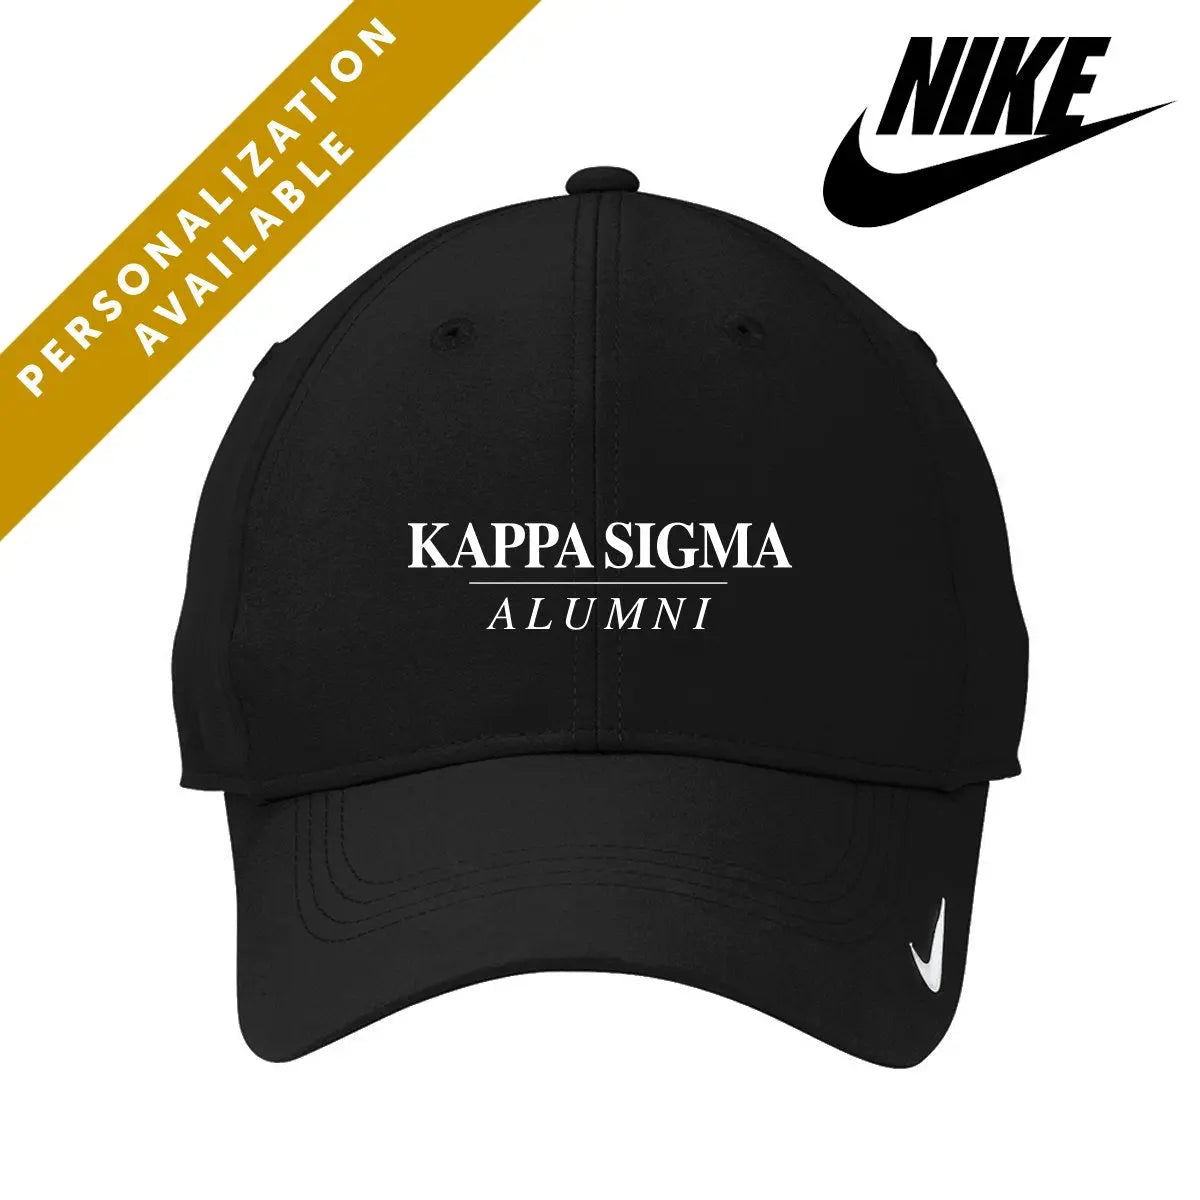 Kappa Sig Alumni Nike Dri-FIT Performance Hat - Kappa Sigma Official Store